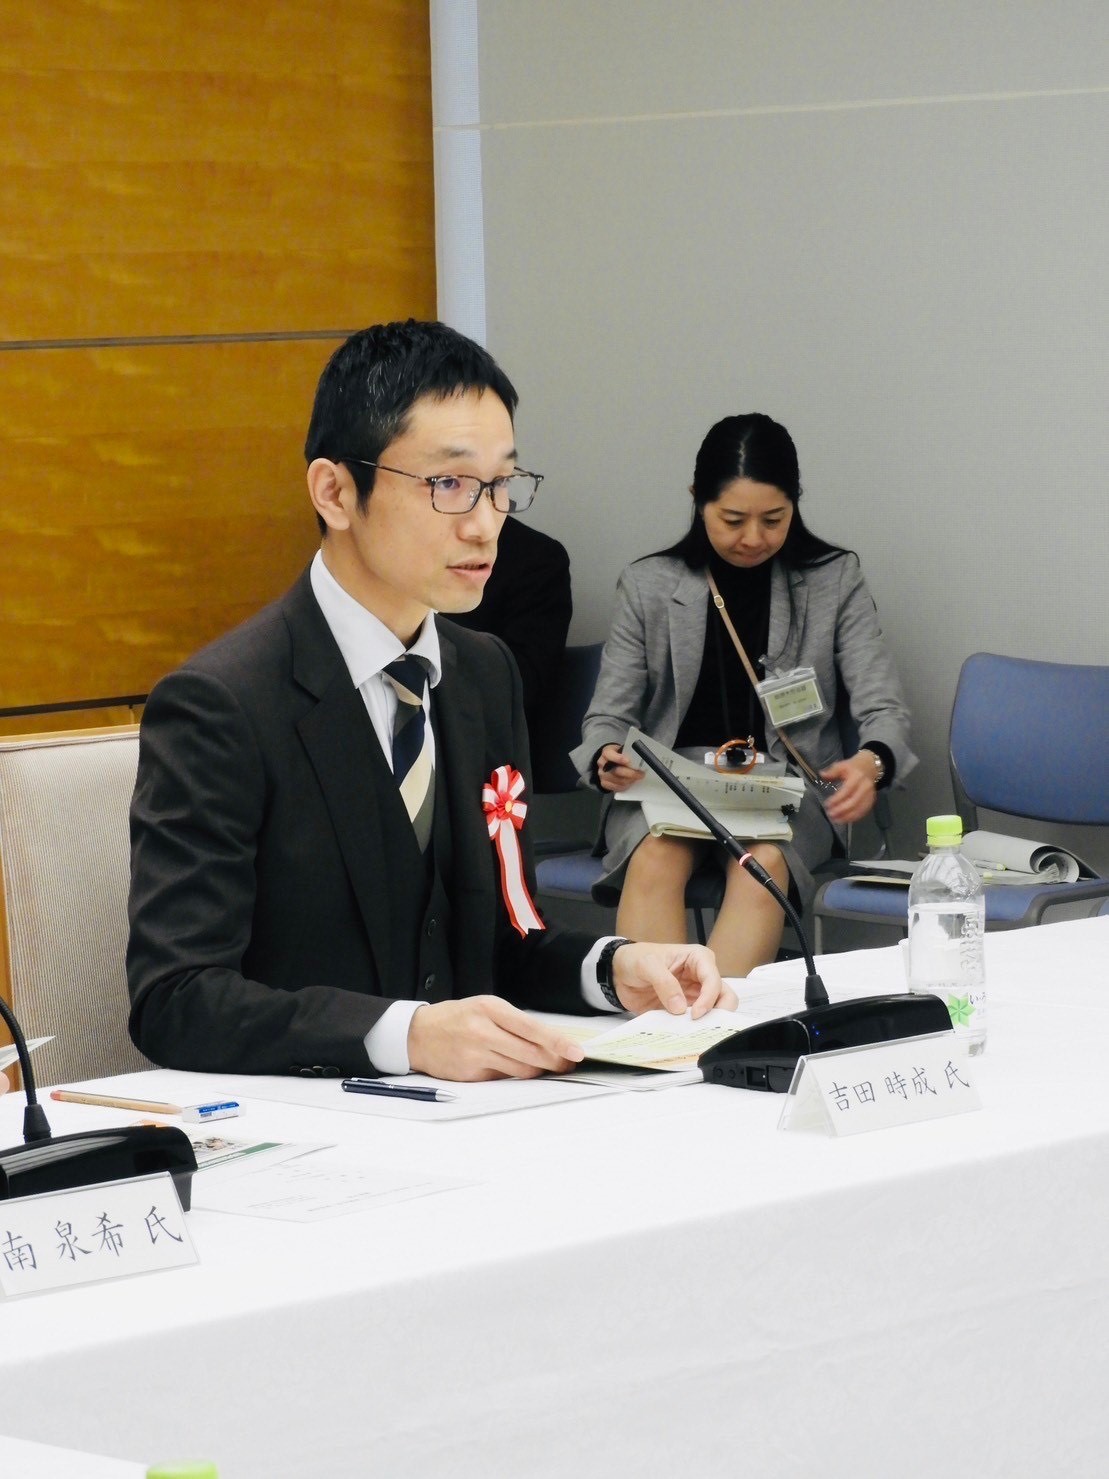 岸田首相主催の会議において、市社協の取り組みを発表しました